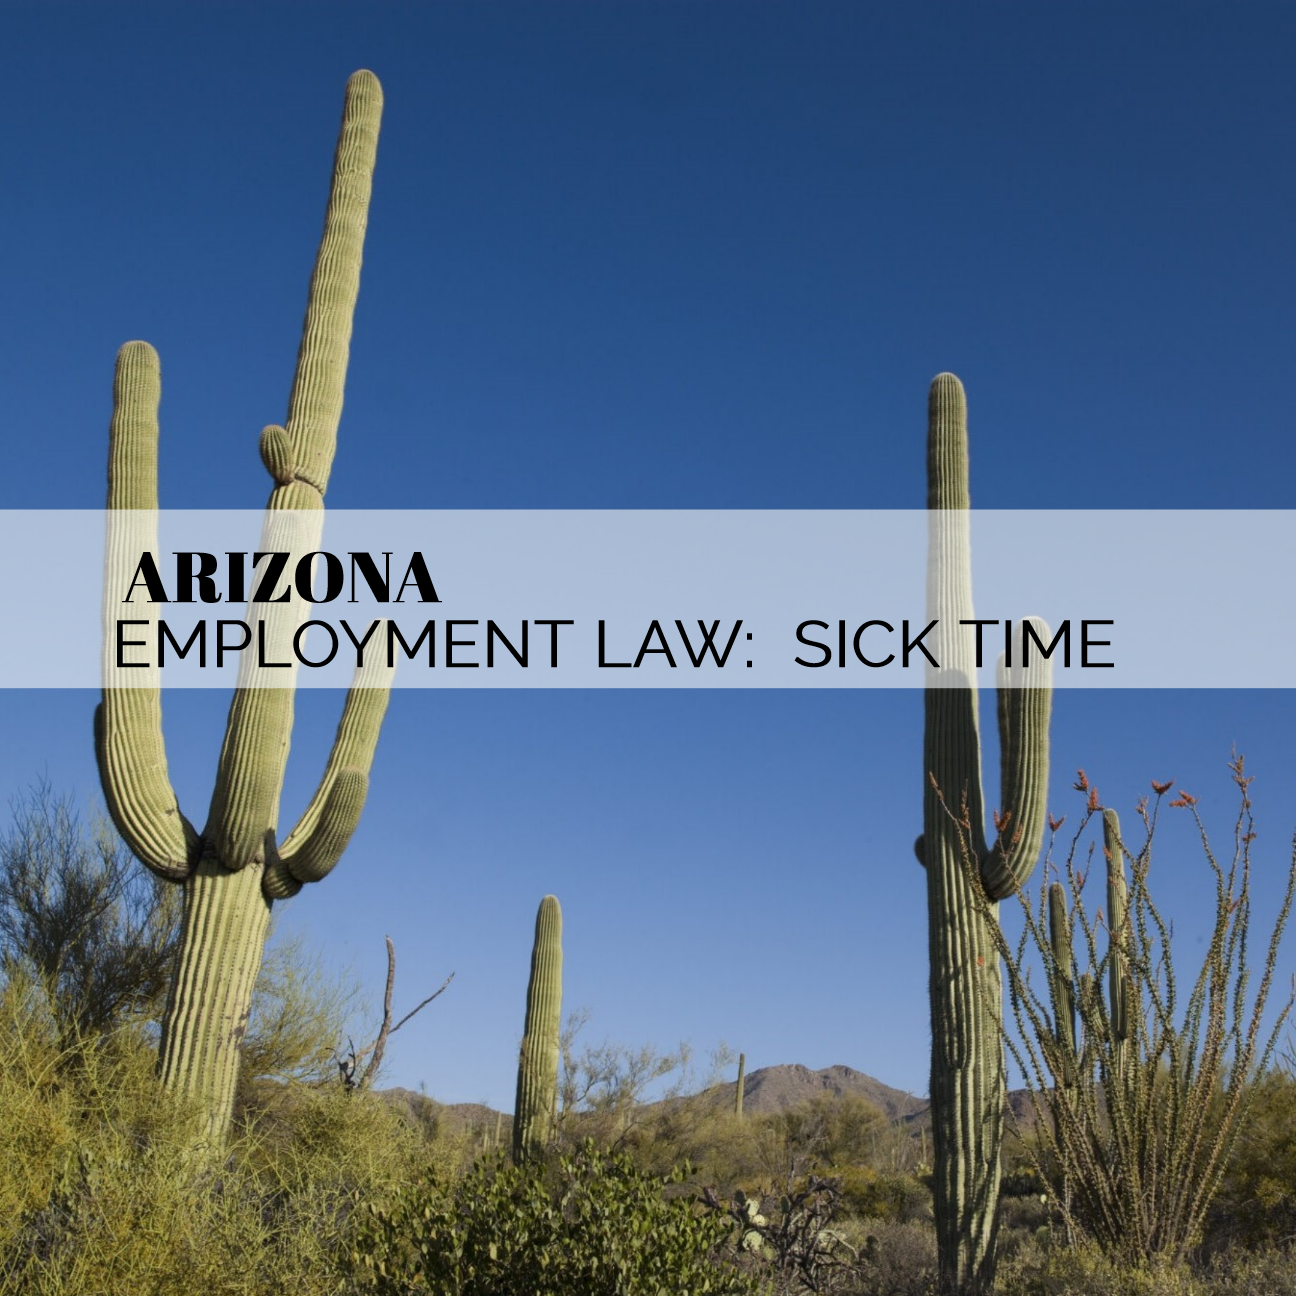 ARIZONA Employment Law Sick Time Bailey Law Firm Arizona